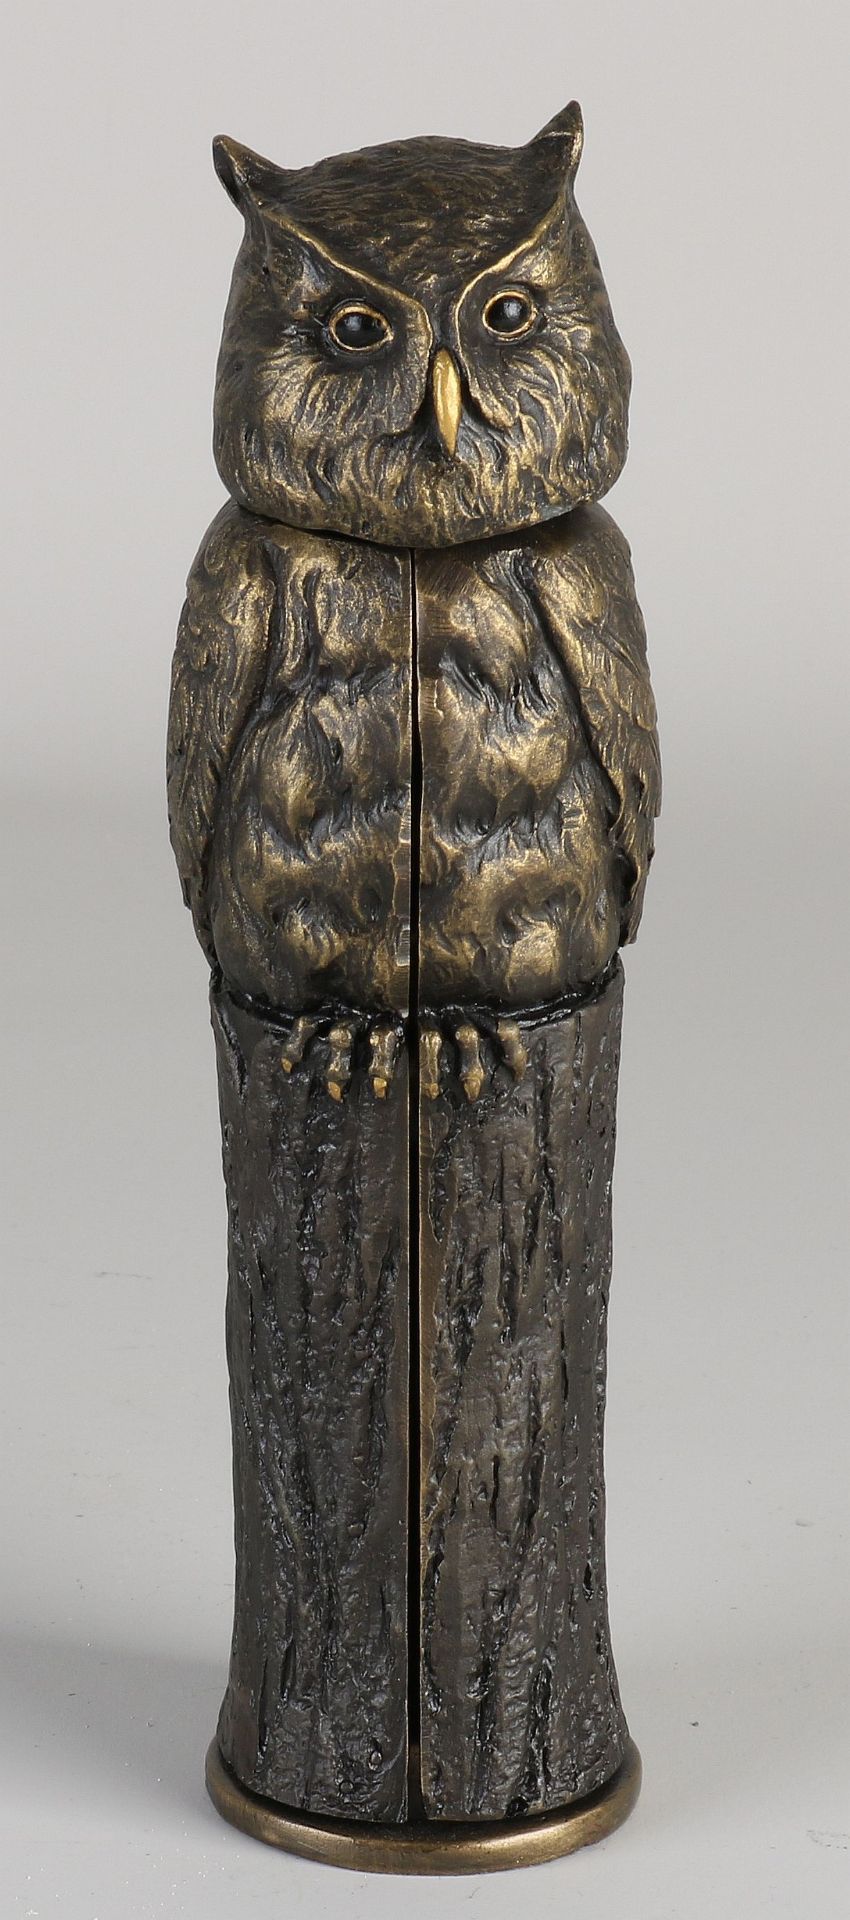 Bronze Schertz figure, H 20 cm. - Image 2 of 2